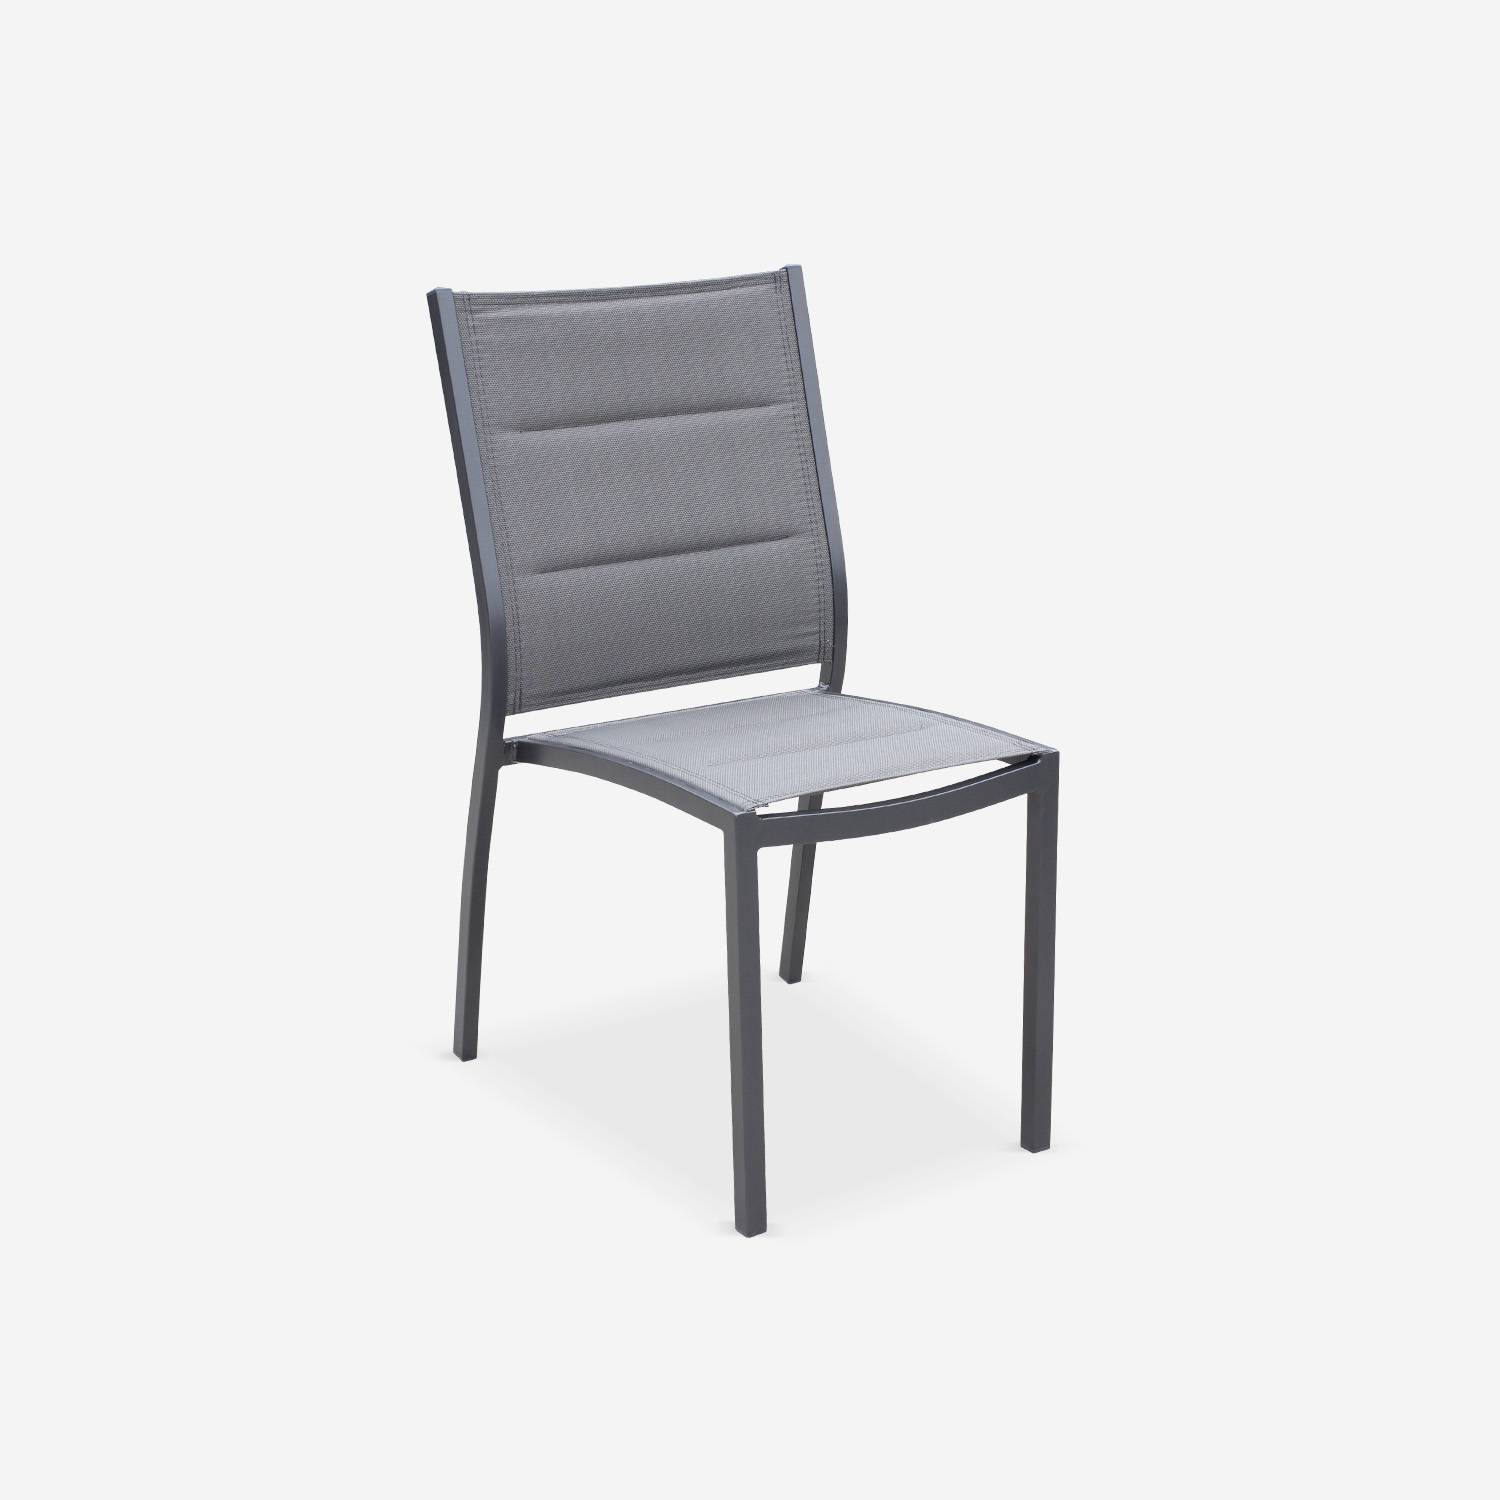 Set mit 2 Stühlen - Chicago / Odenton Anthrazit - Aus anthrazitfarbenem Aluminium und dunkelgrauem Textil, stapelbar Photo2